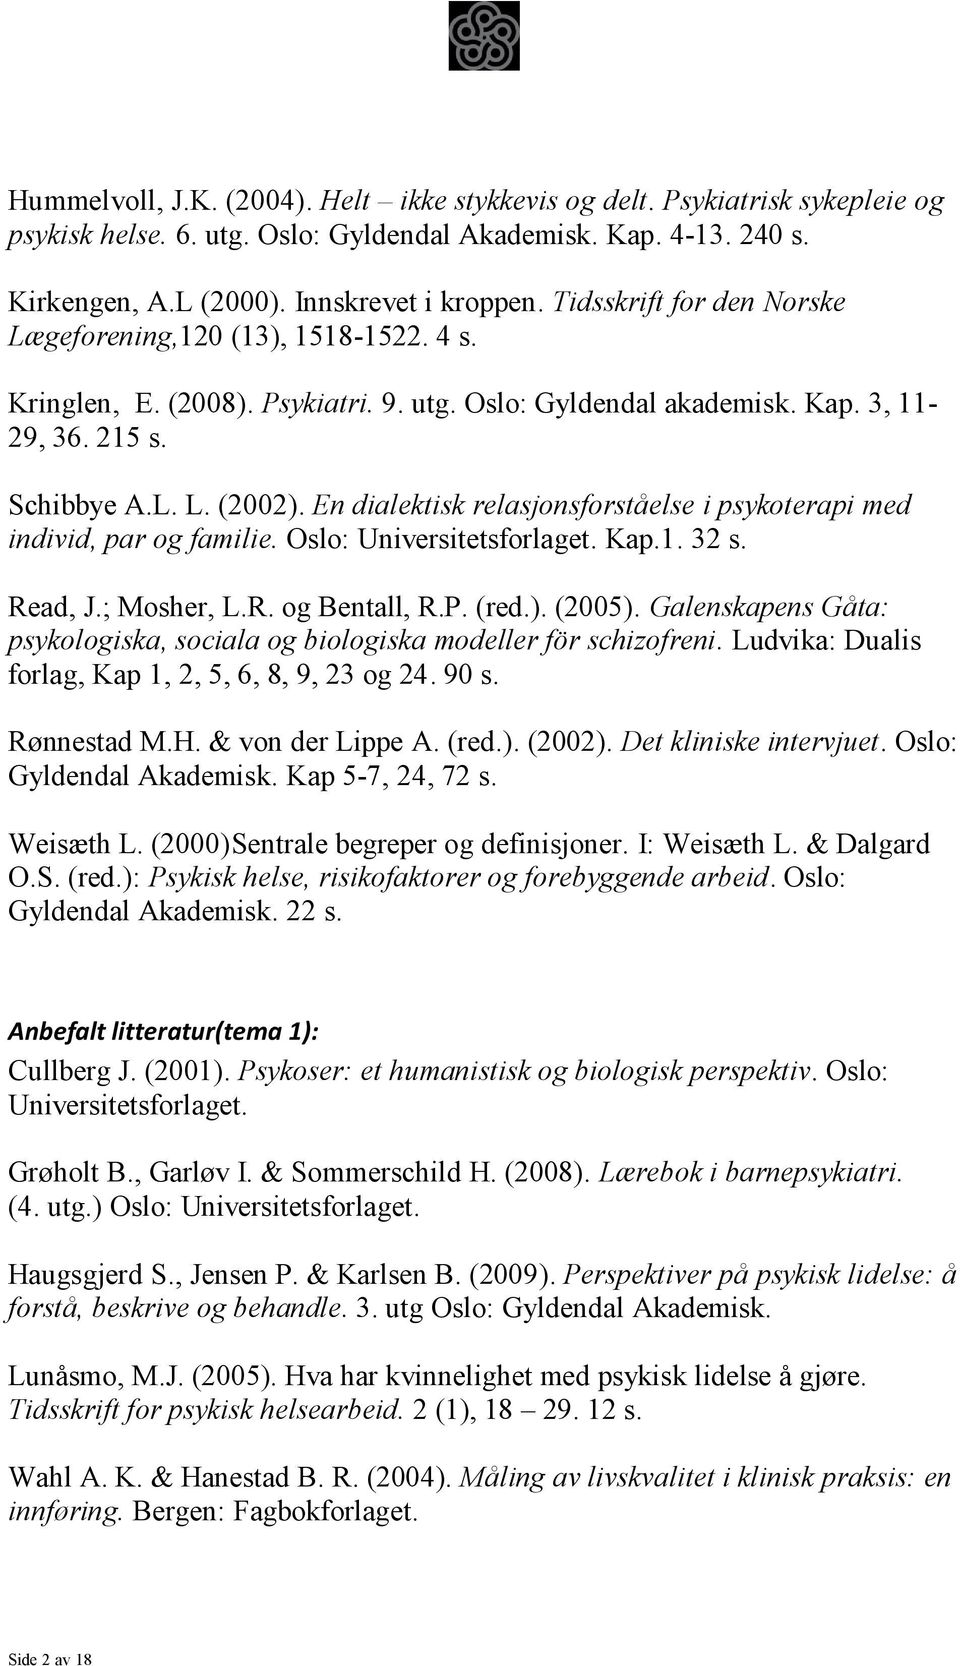 En dialektisk relasjonsforståelse i psykoterapi med individ, par og familie. Oslo: Universitetsforlaget. Kap.1. 32 s. Read, J.; Mosher, L.R. og Bentall, R.P. (red.). (2005).